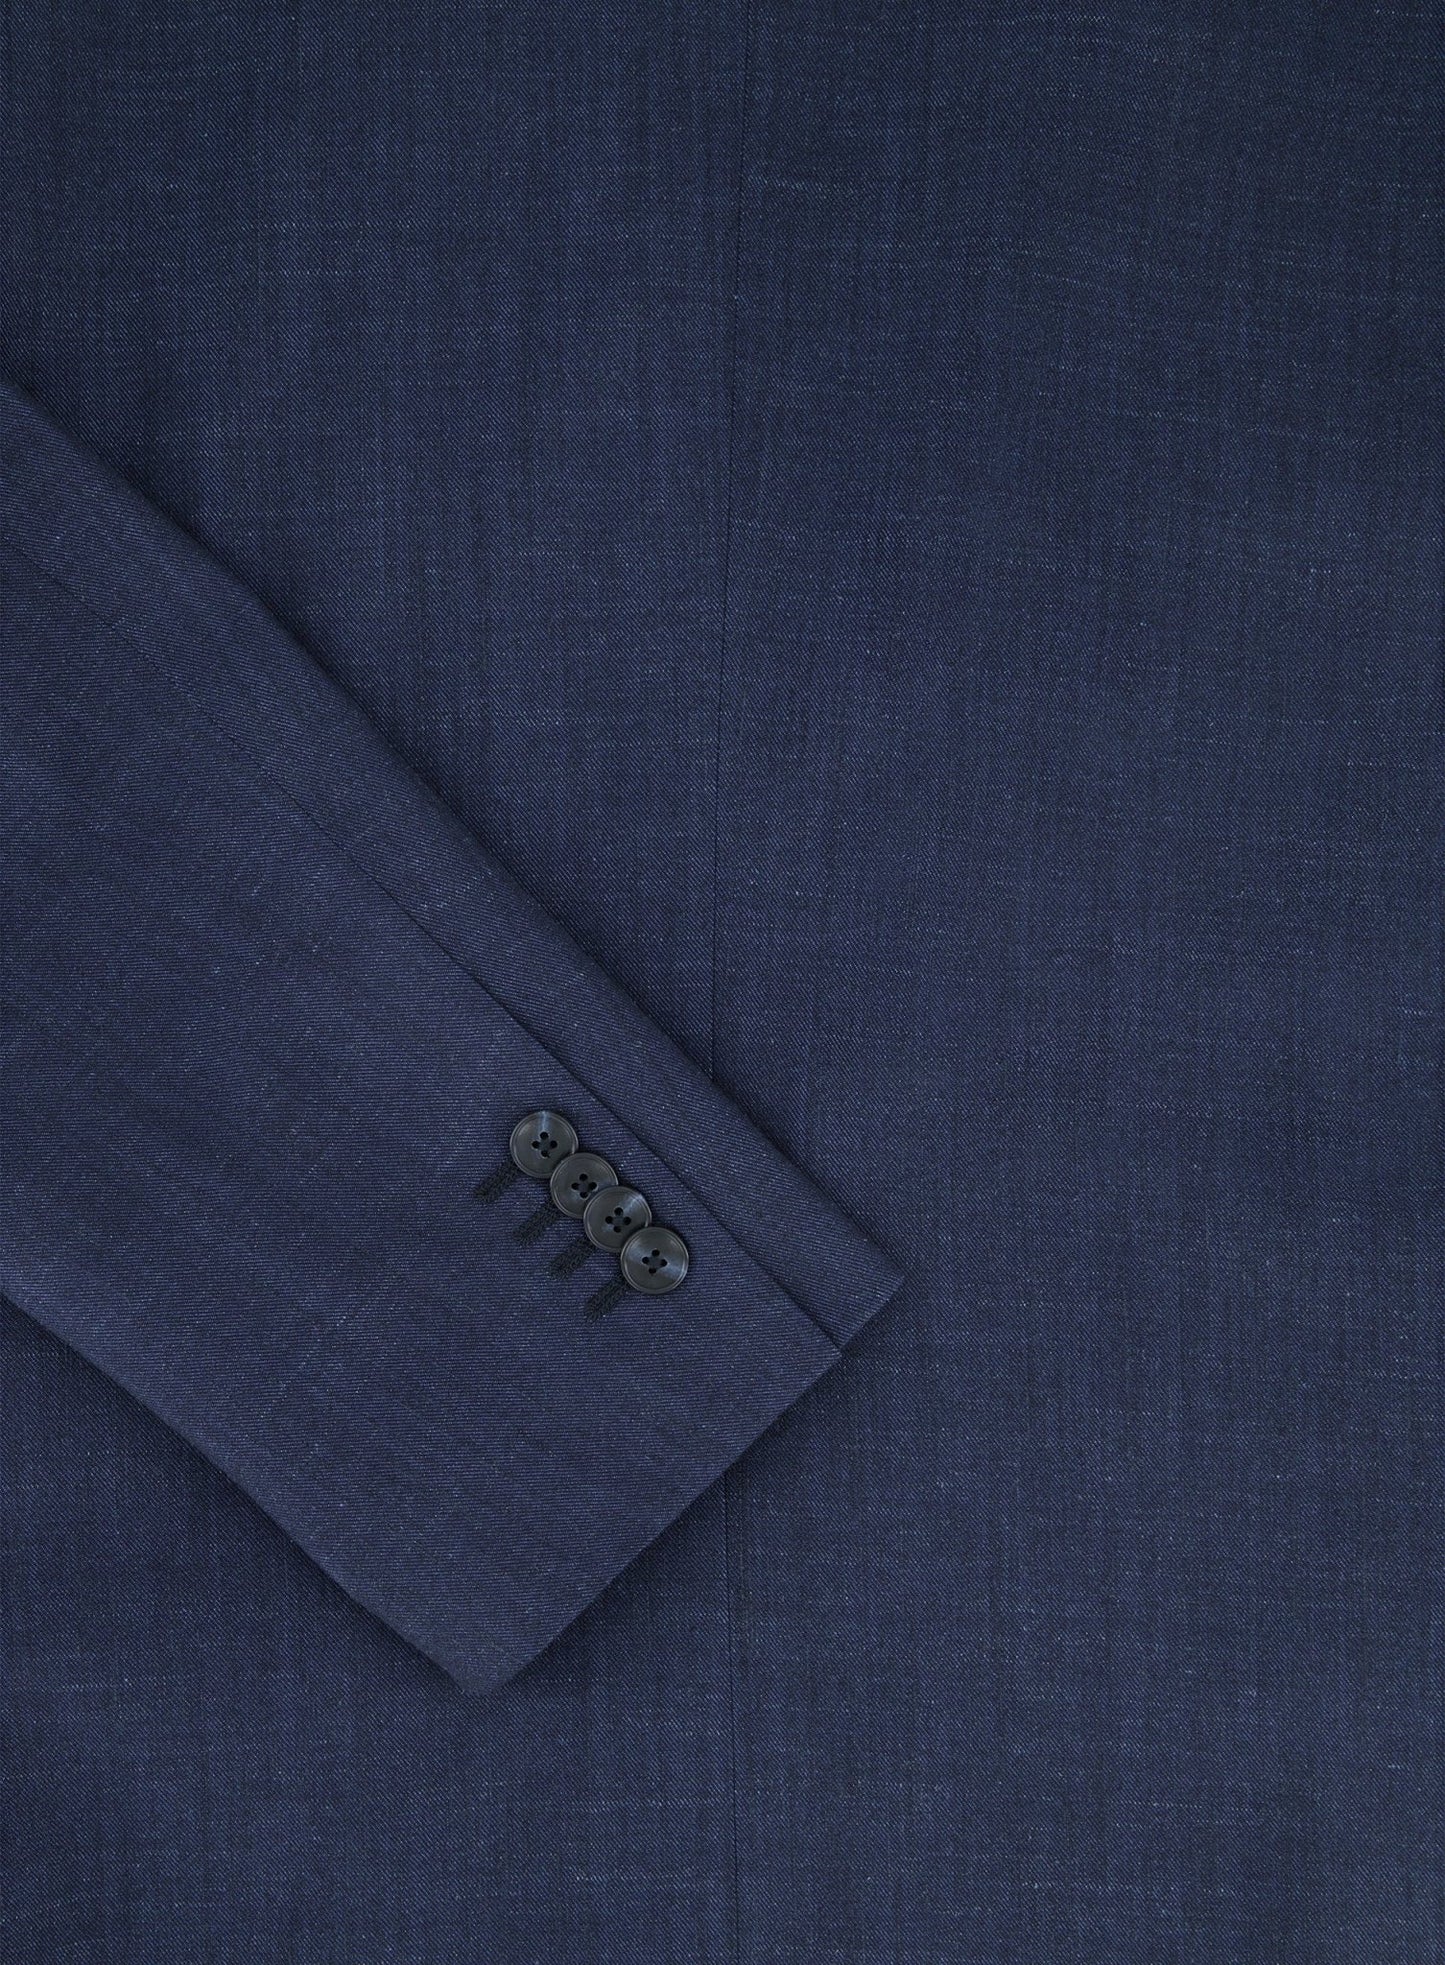 Driedelig pak van wol, zijde en linnen | BLUE NAVY